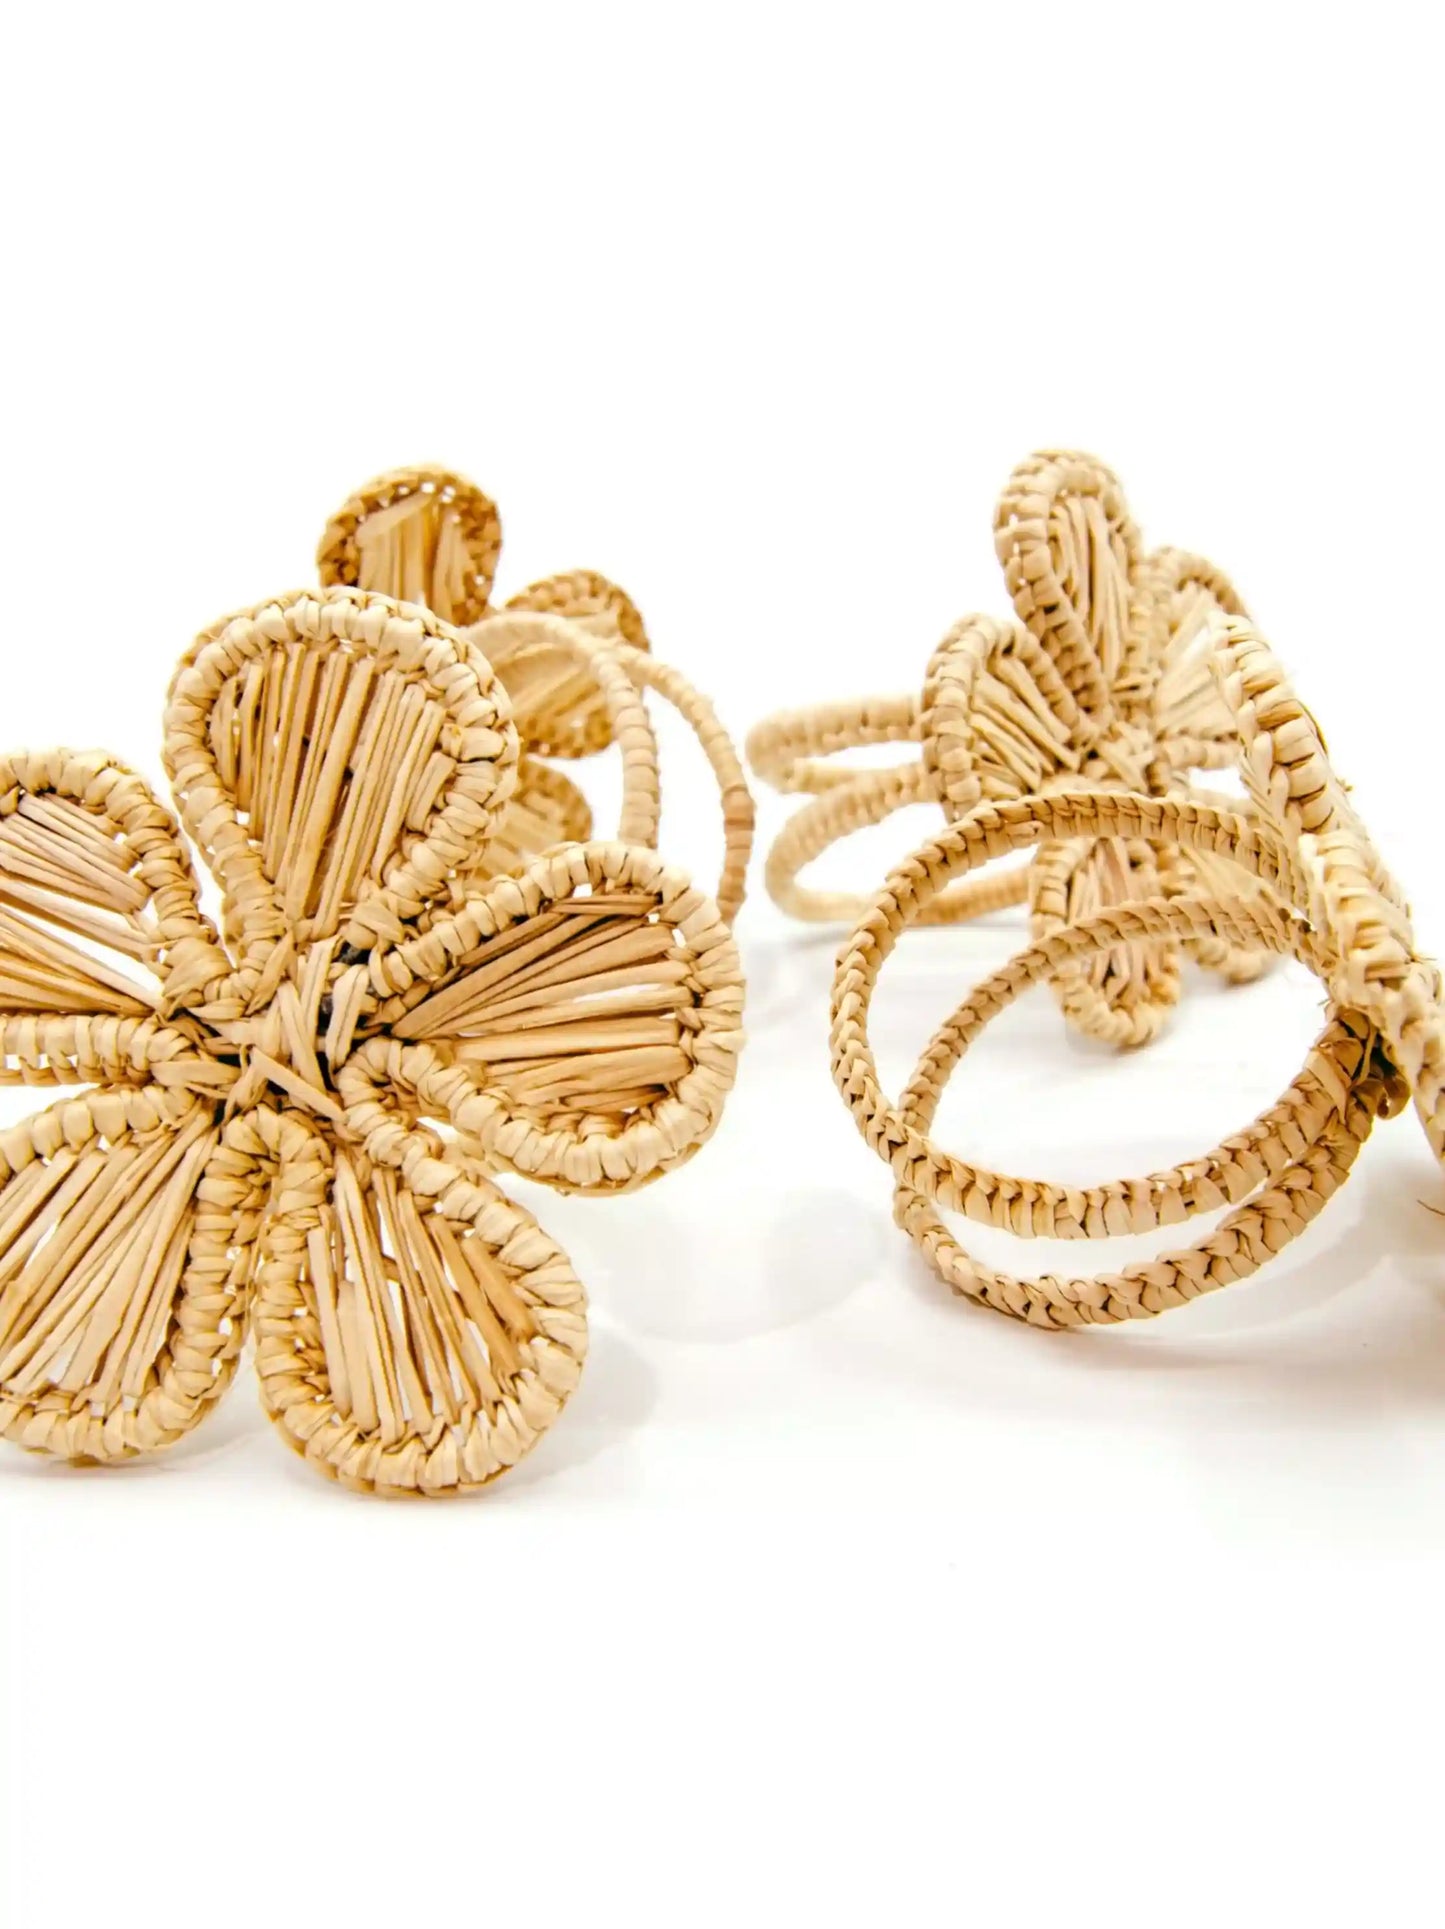 Woven Straw Flower Napkin Rings Set of 4